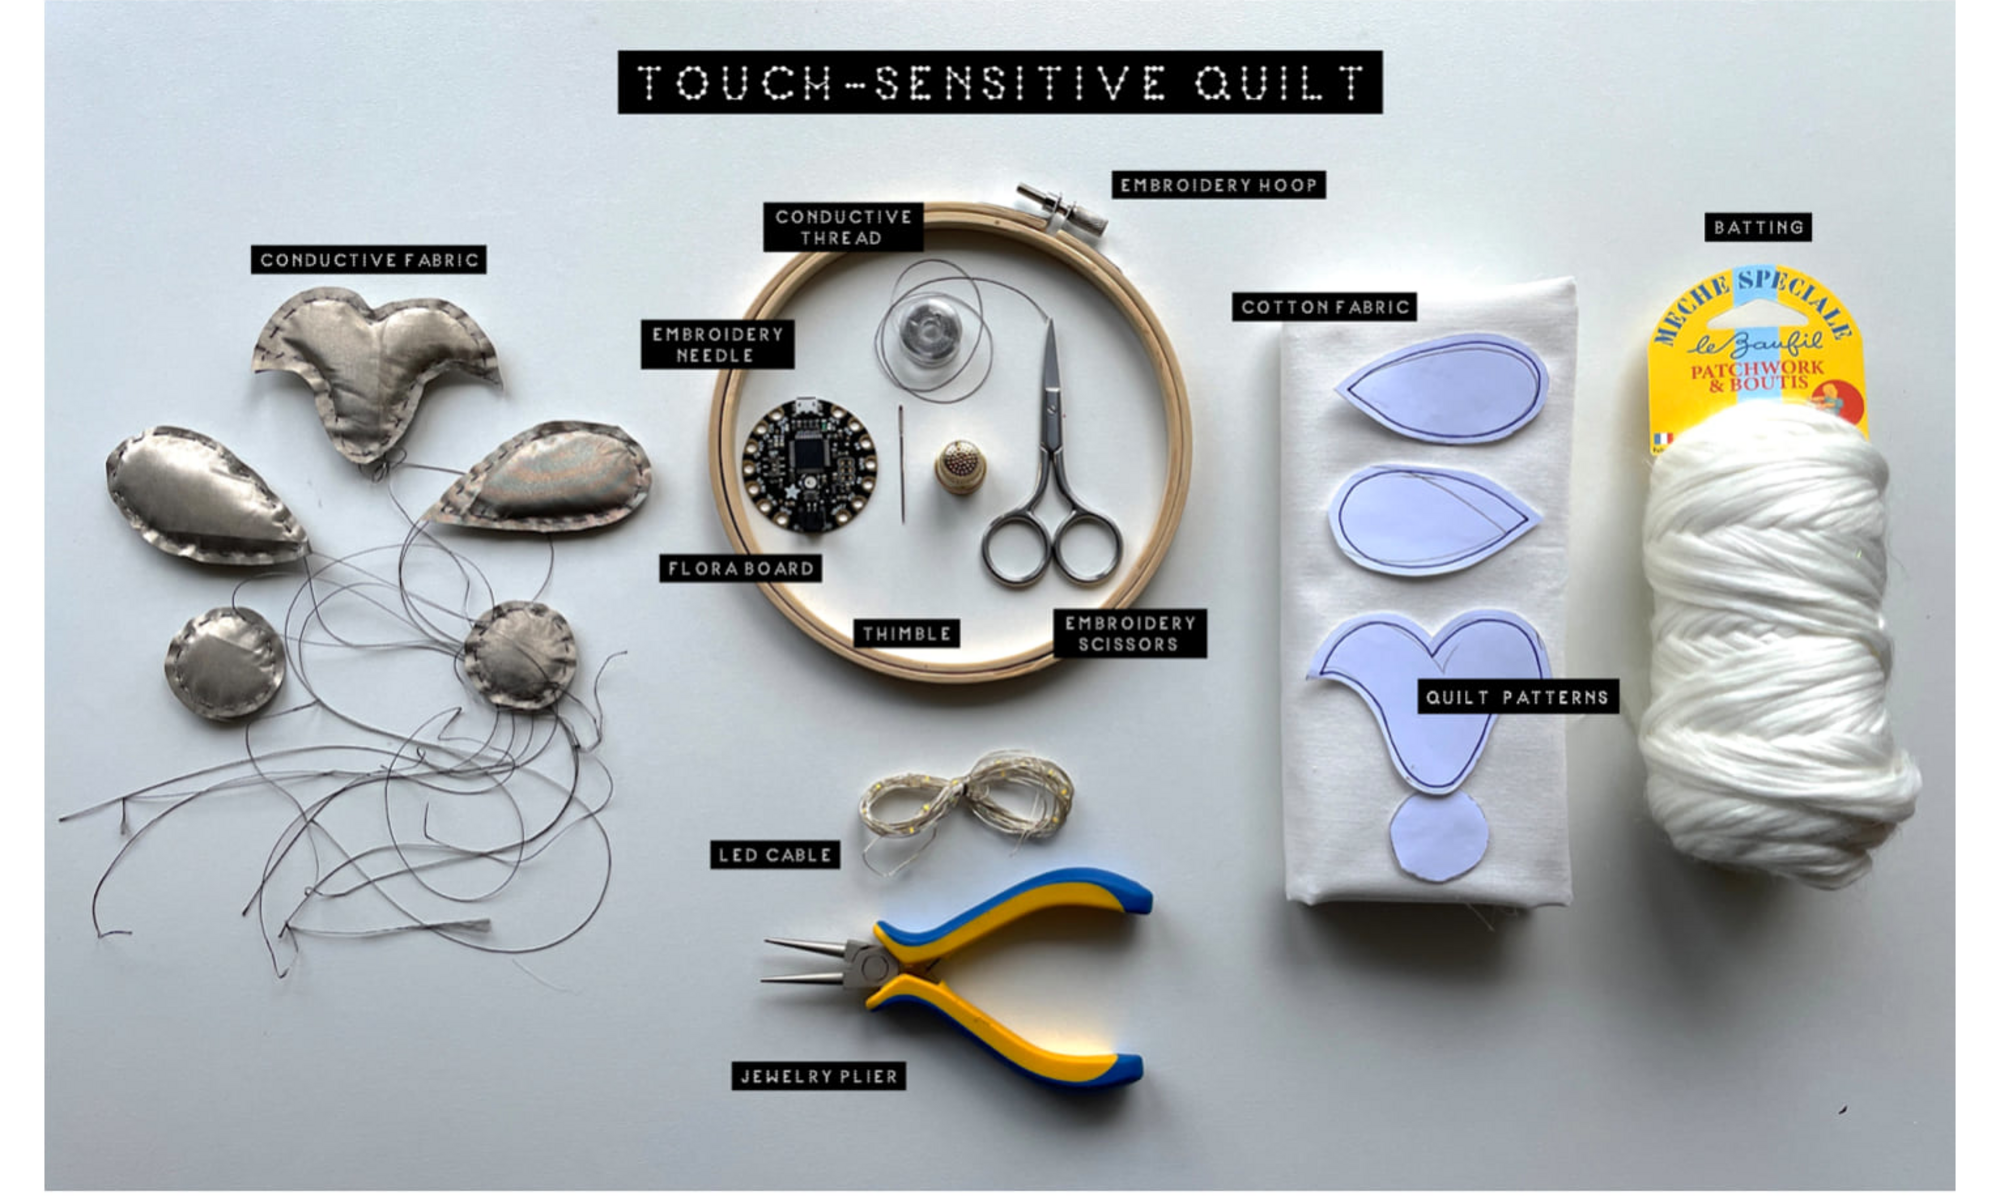 Touch-sensitive quilt